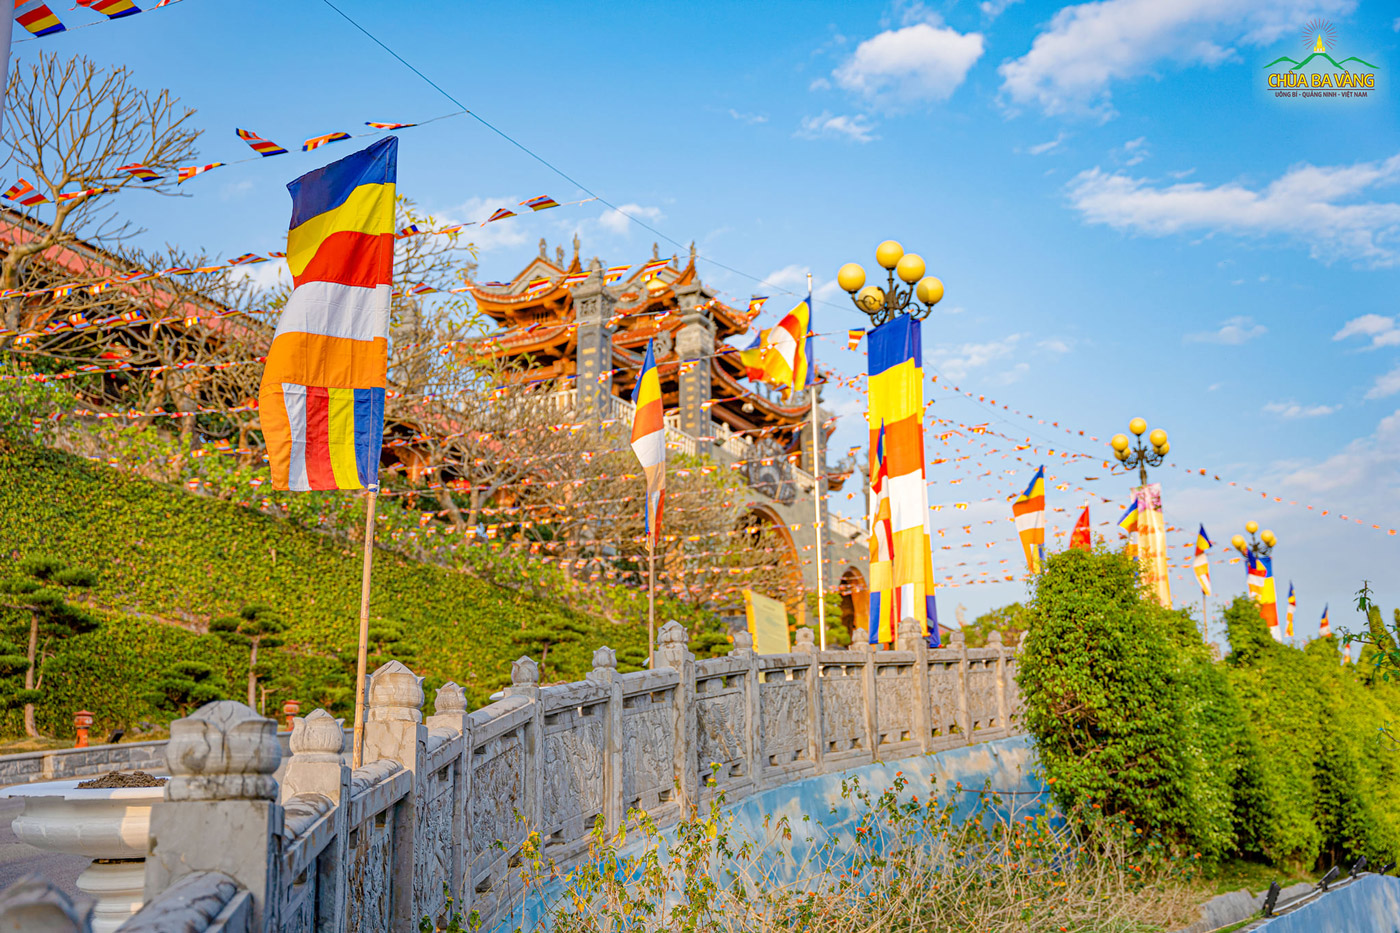 Hàng ngàn lá cờ Phật giáo được treo lên trong khuôn viên chùa Ba Vàng.